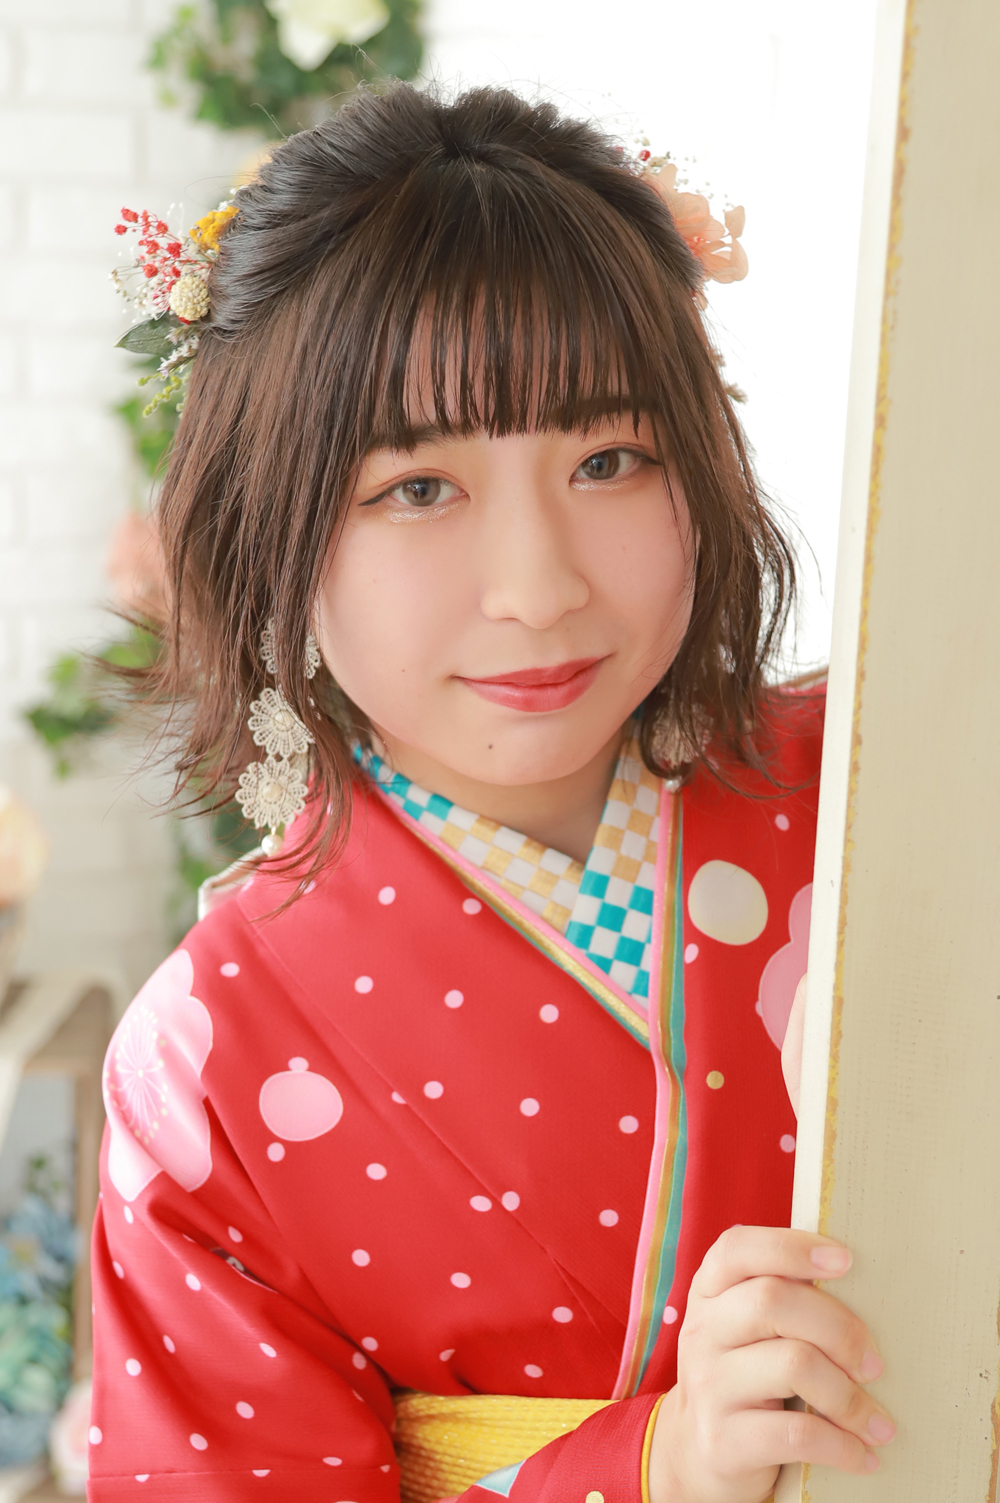 髪型 髪飾り ハーフアップでお花をたくさん散りばめてかわいらしいヘアスタイルに トータルフォトスタジオトマト 栃木県小山市の写真館です 七五三 お宮参り 成人式はトマトへ